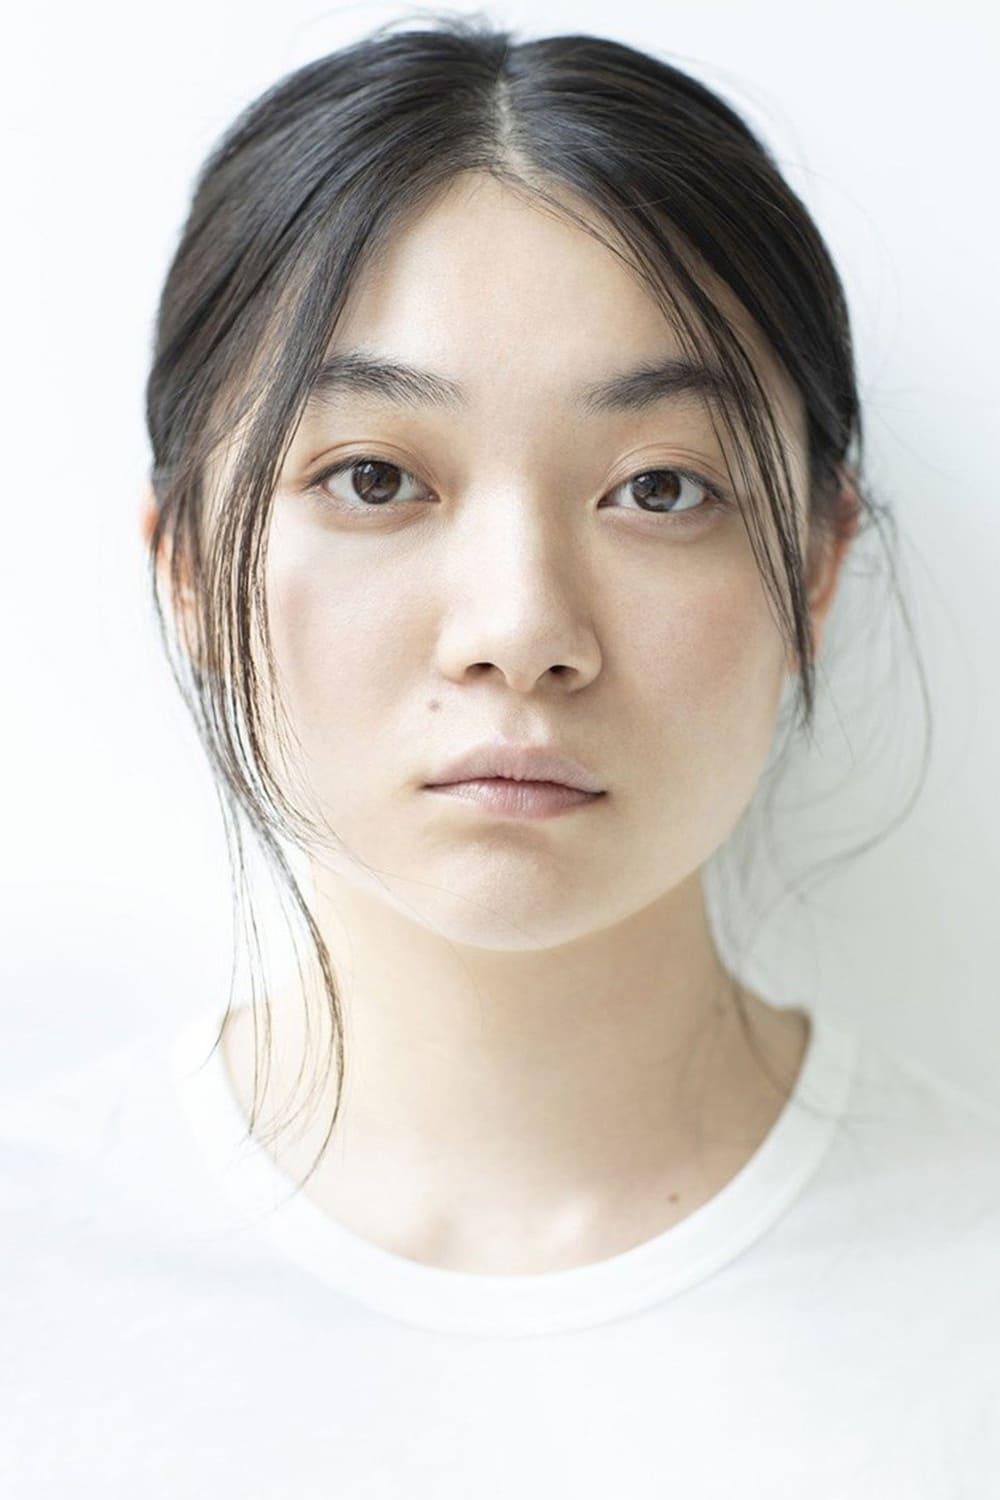 Toko Miura | Misaki Watari